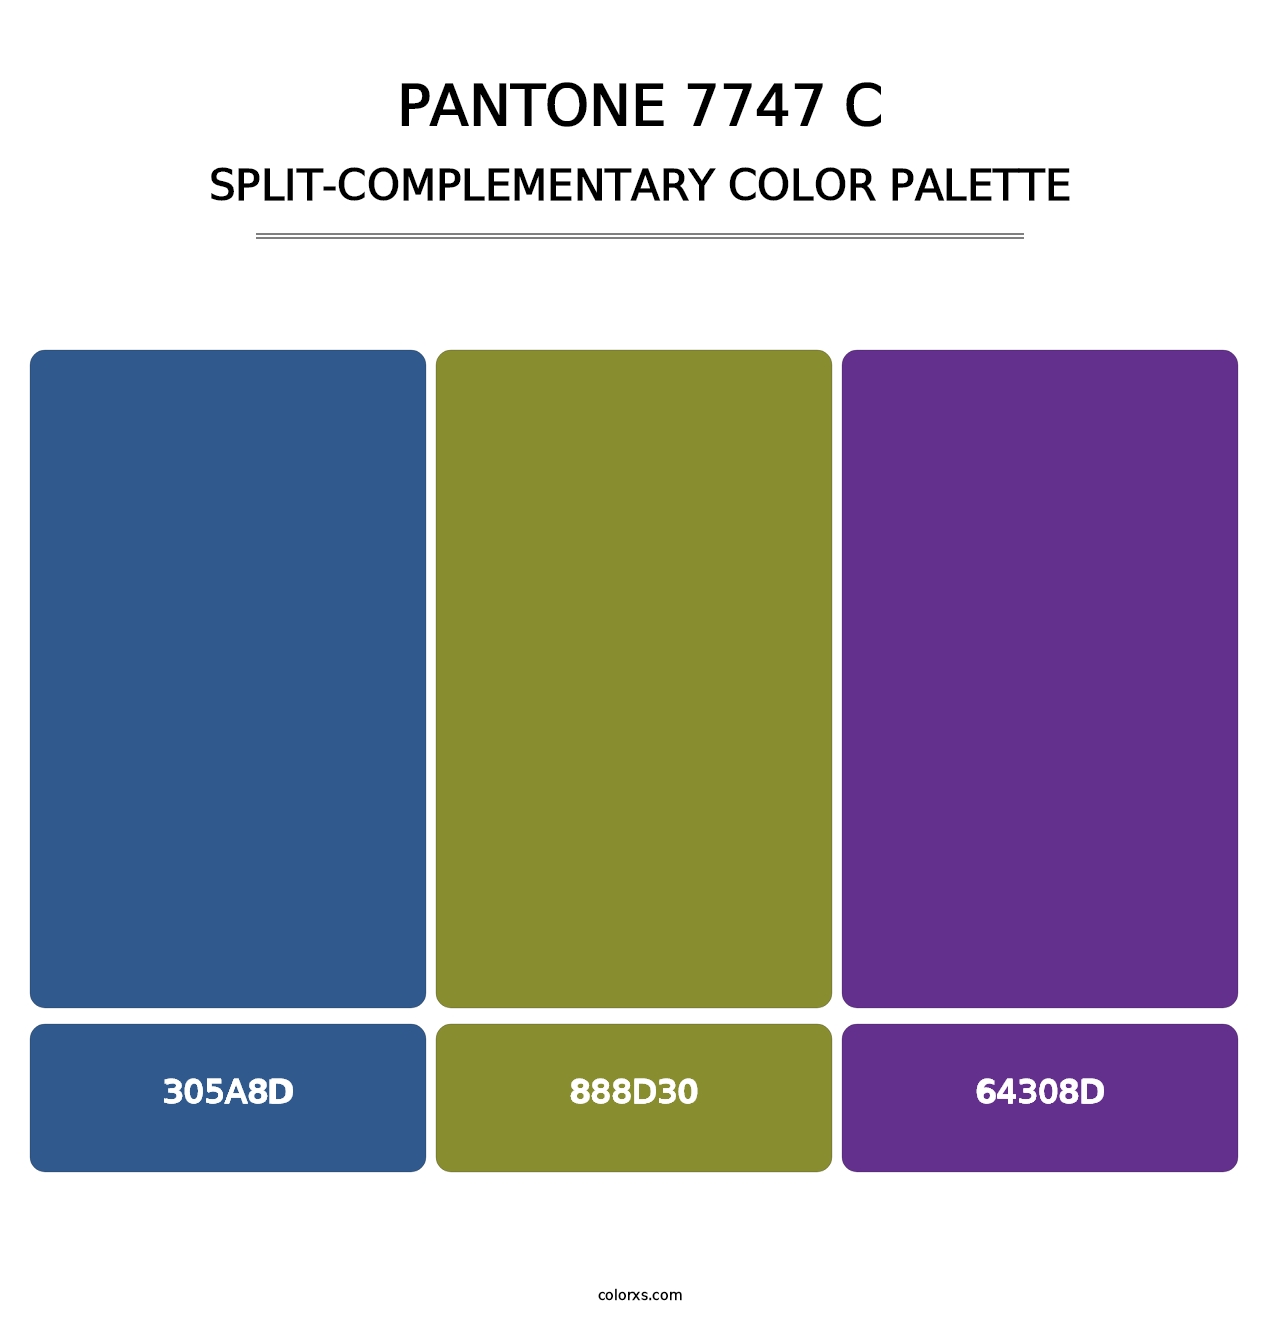 PANTONE 7747 C - Split-Complementary Color Palette